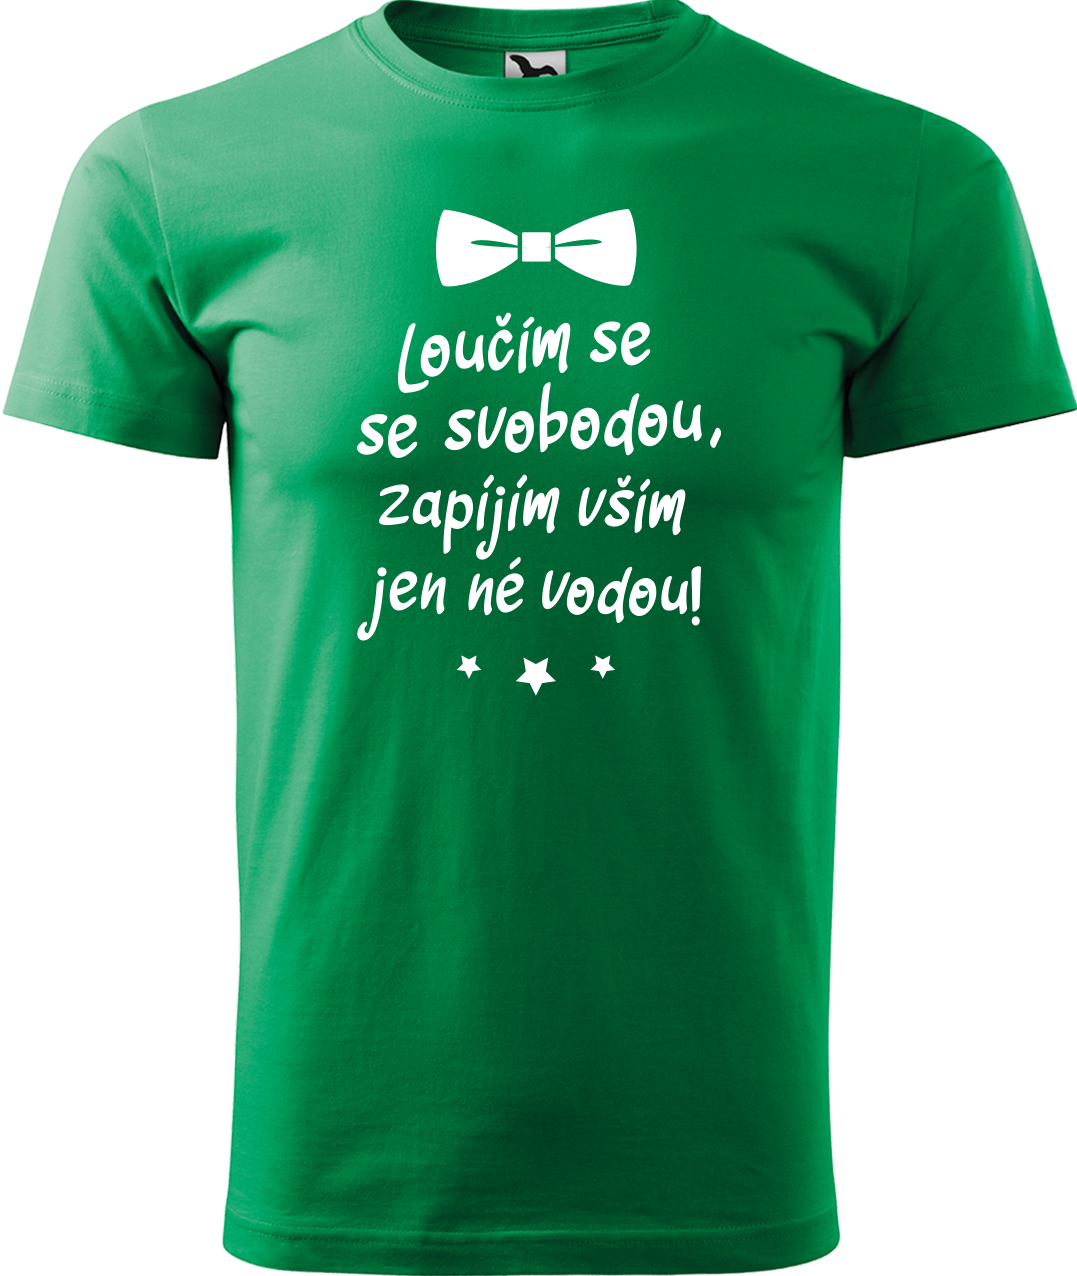 Tričko na rozlučku se svobodou - Loučím se se svobodou Velikost: S, Barva: Středně zelená (16)